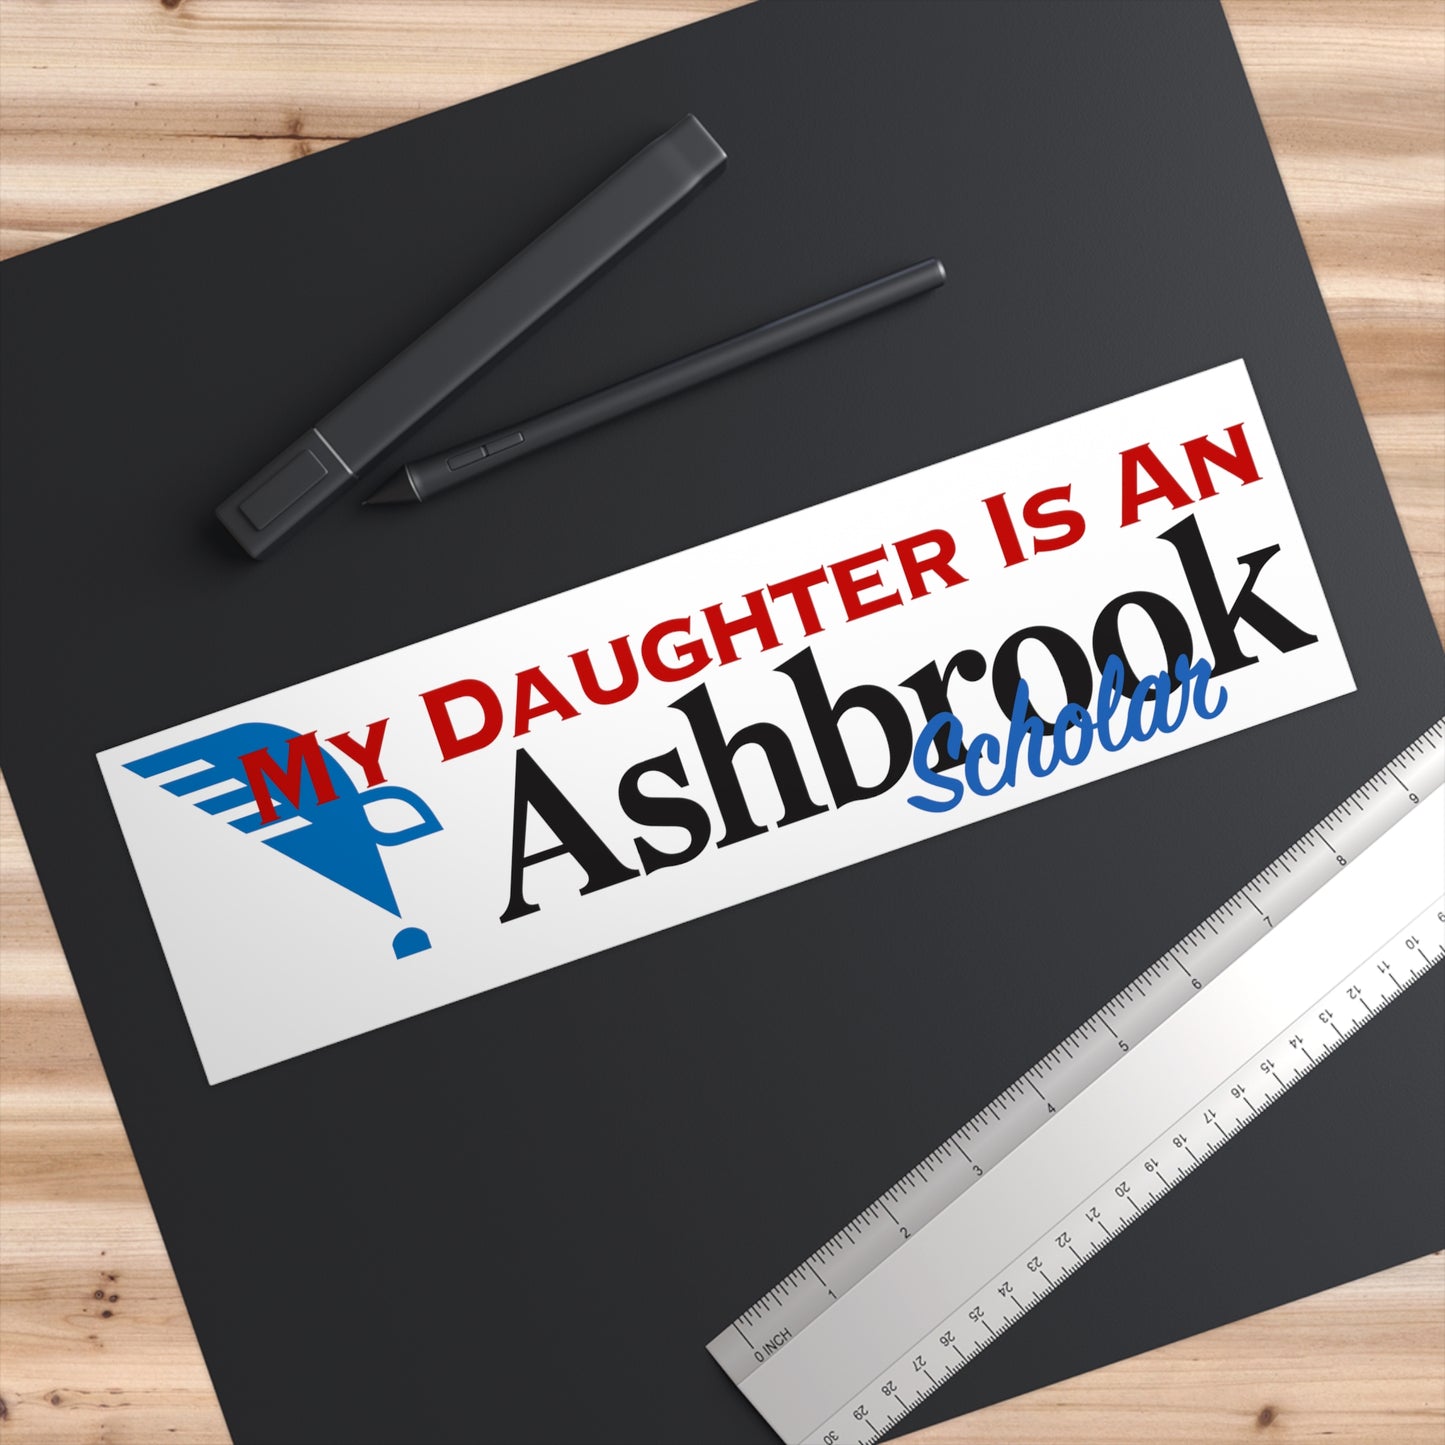 "My Daughter is an Ashbrook Scholar" Bumper Sticker